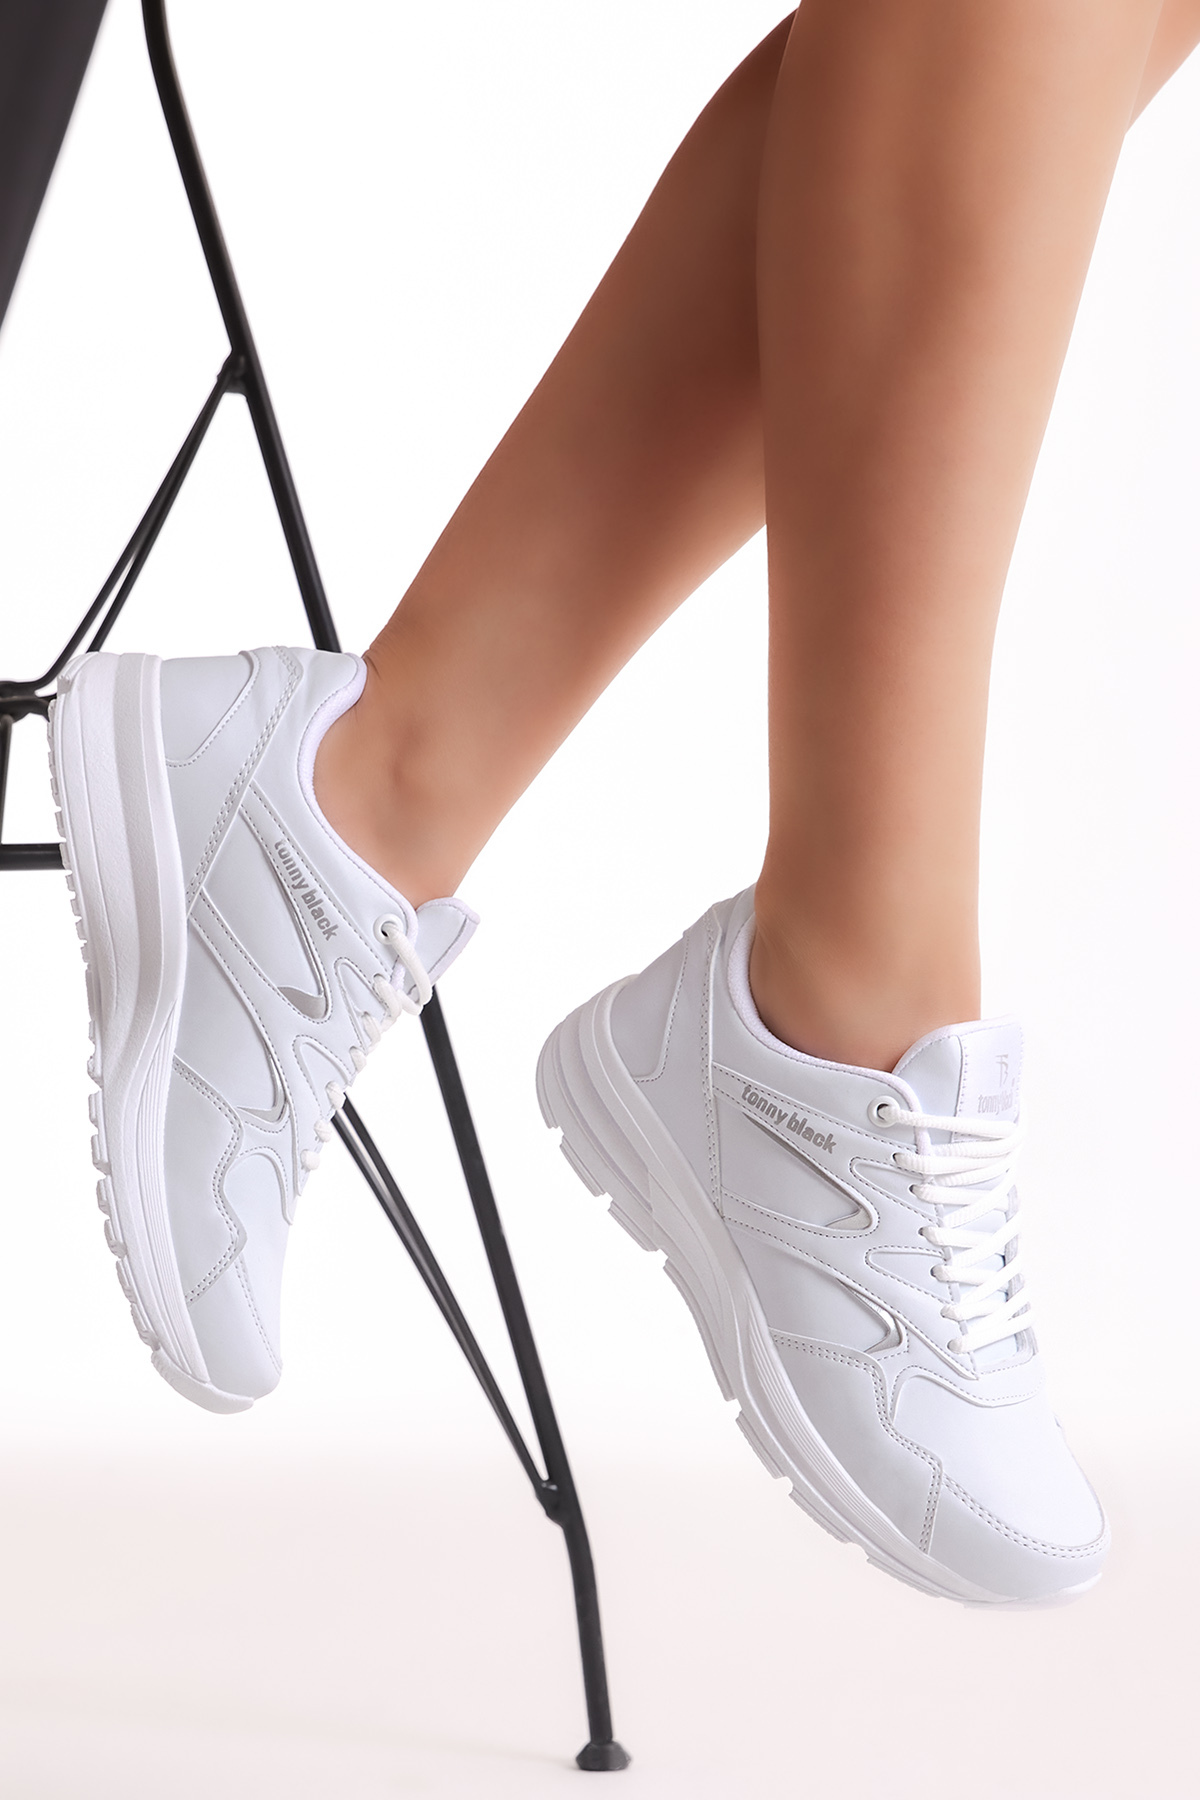 Unisex Beyaz Spor Ayakkabı 772-0